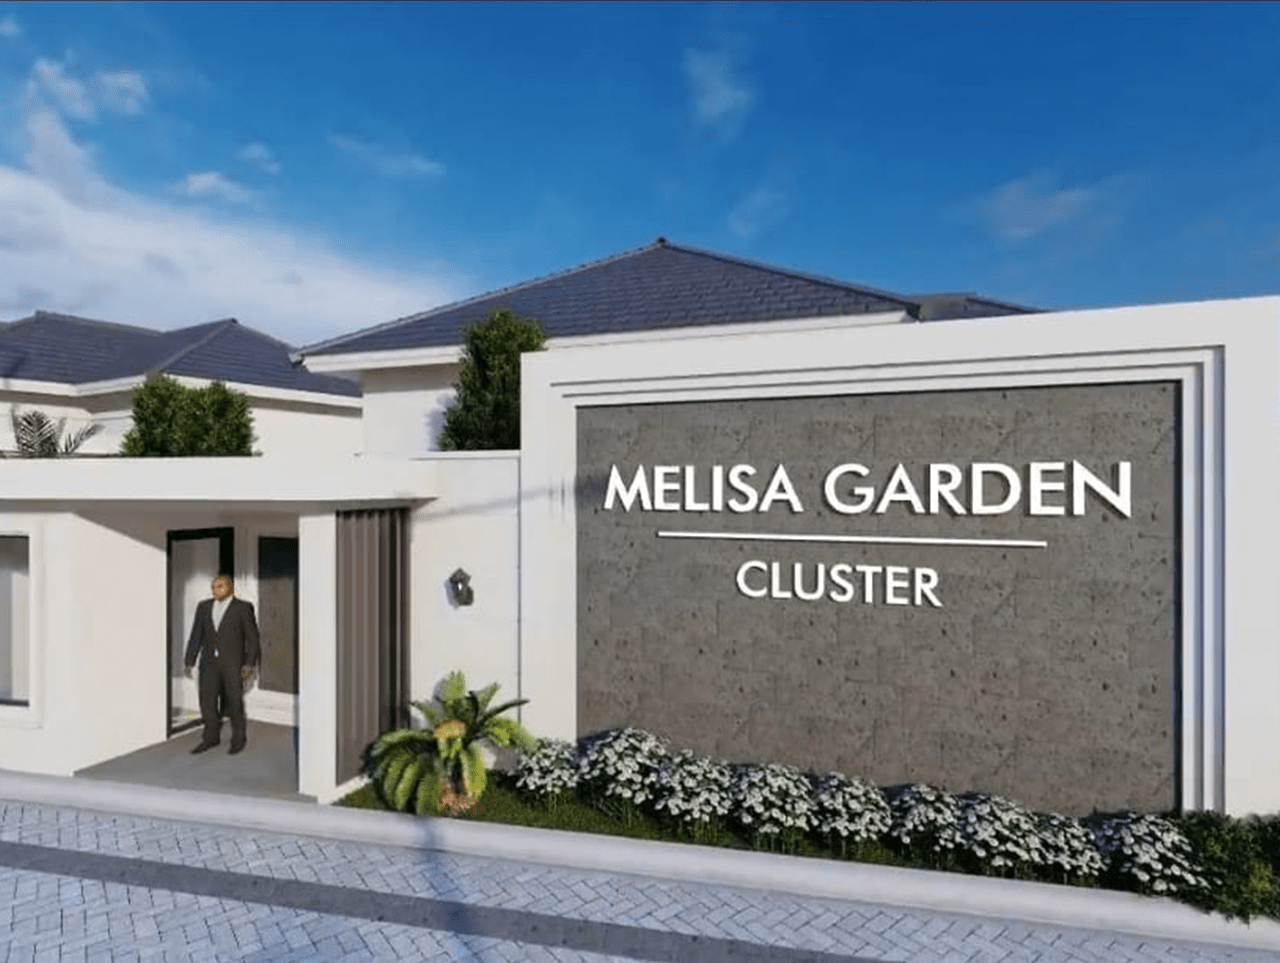 Melisa Garden Cluster: Rumah Impian yang modern dengan Harga yang sangat terjangkau di Pekanbaru!